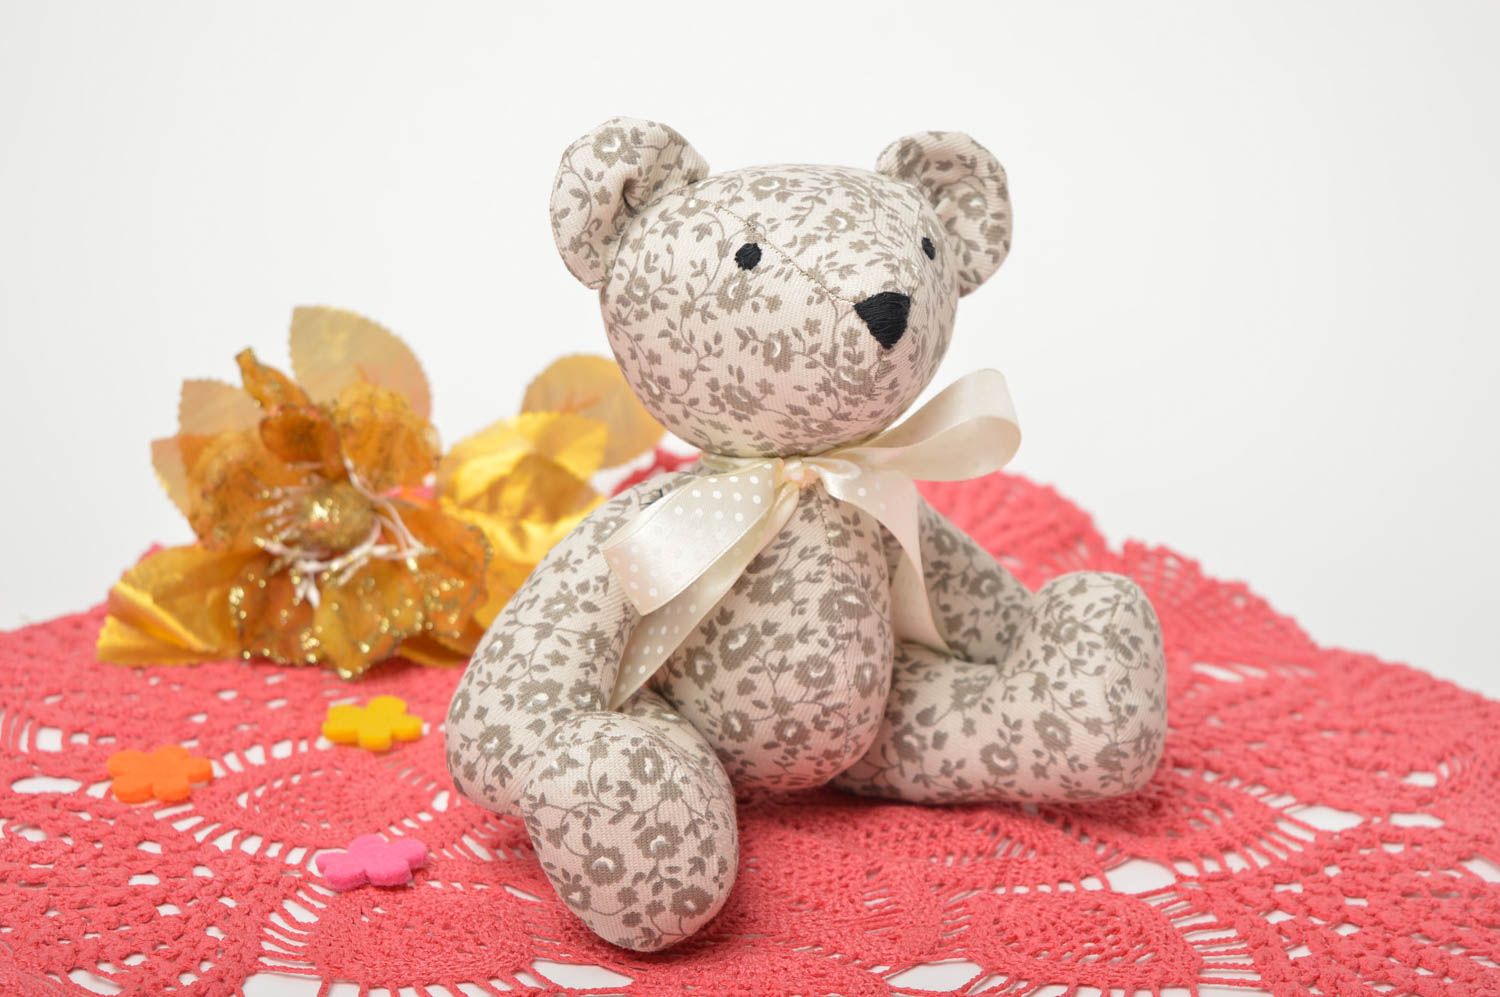 Interior stuffed toy present for children designer soft toy nursery decor photo 1